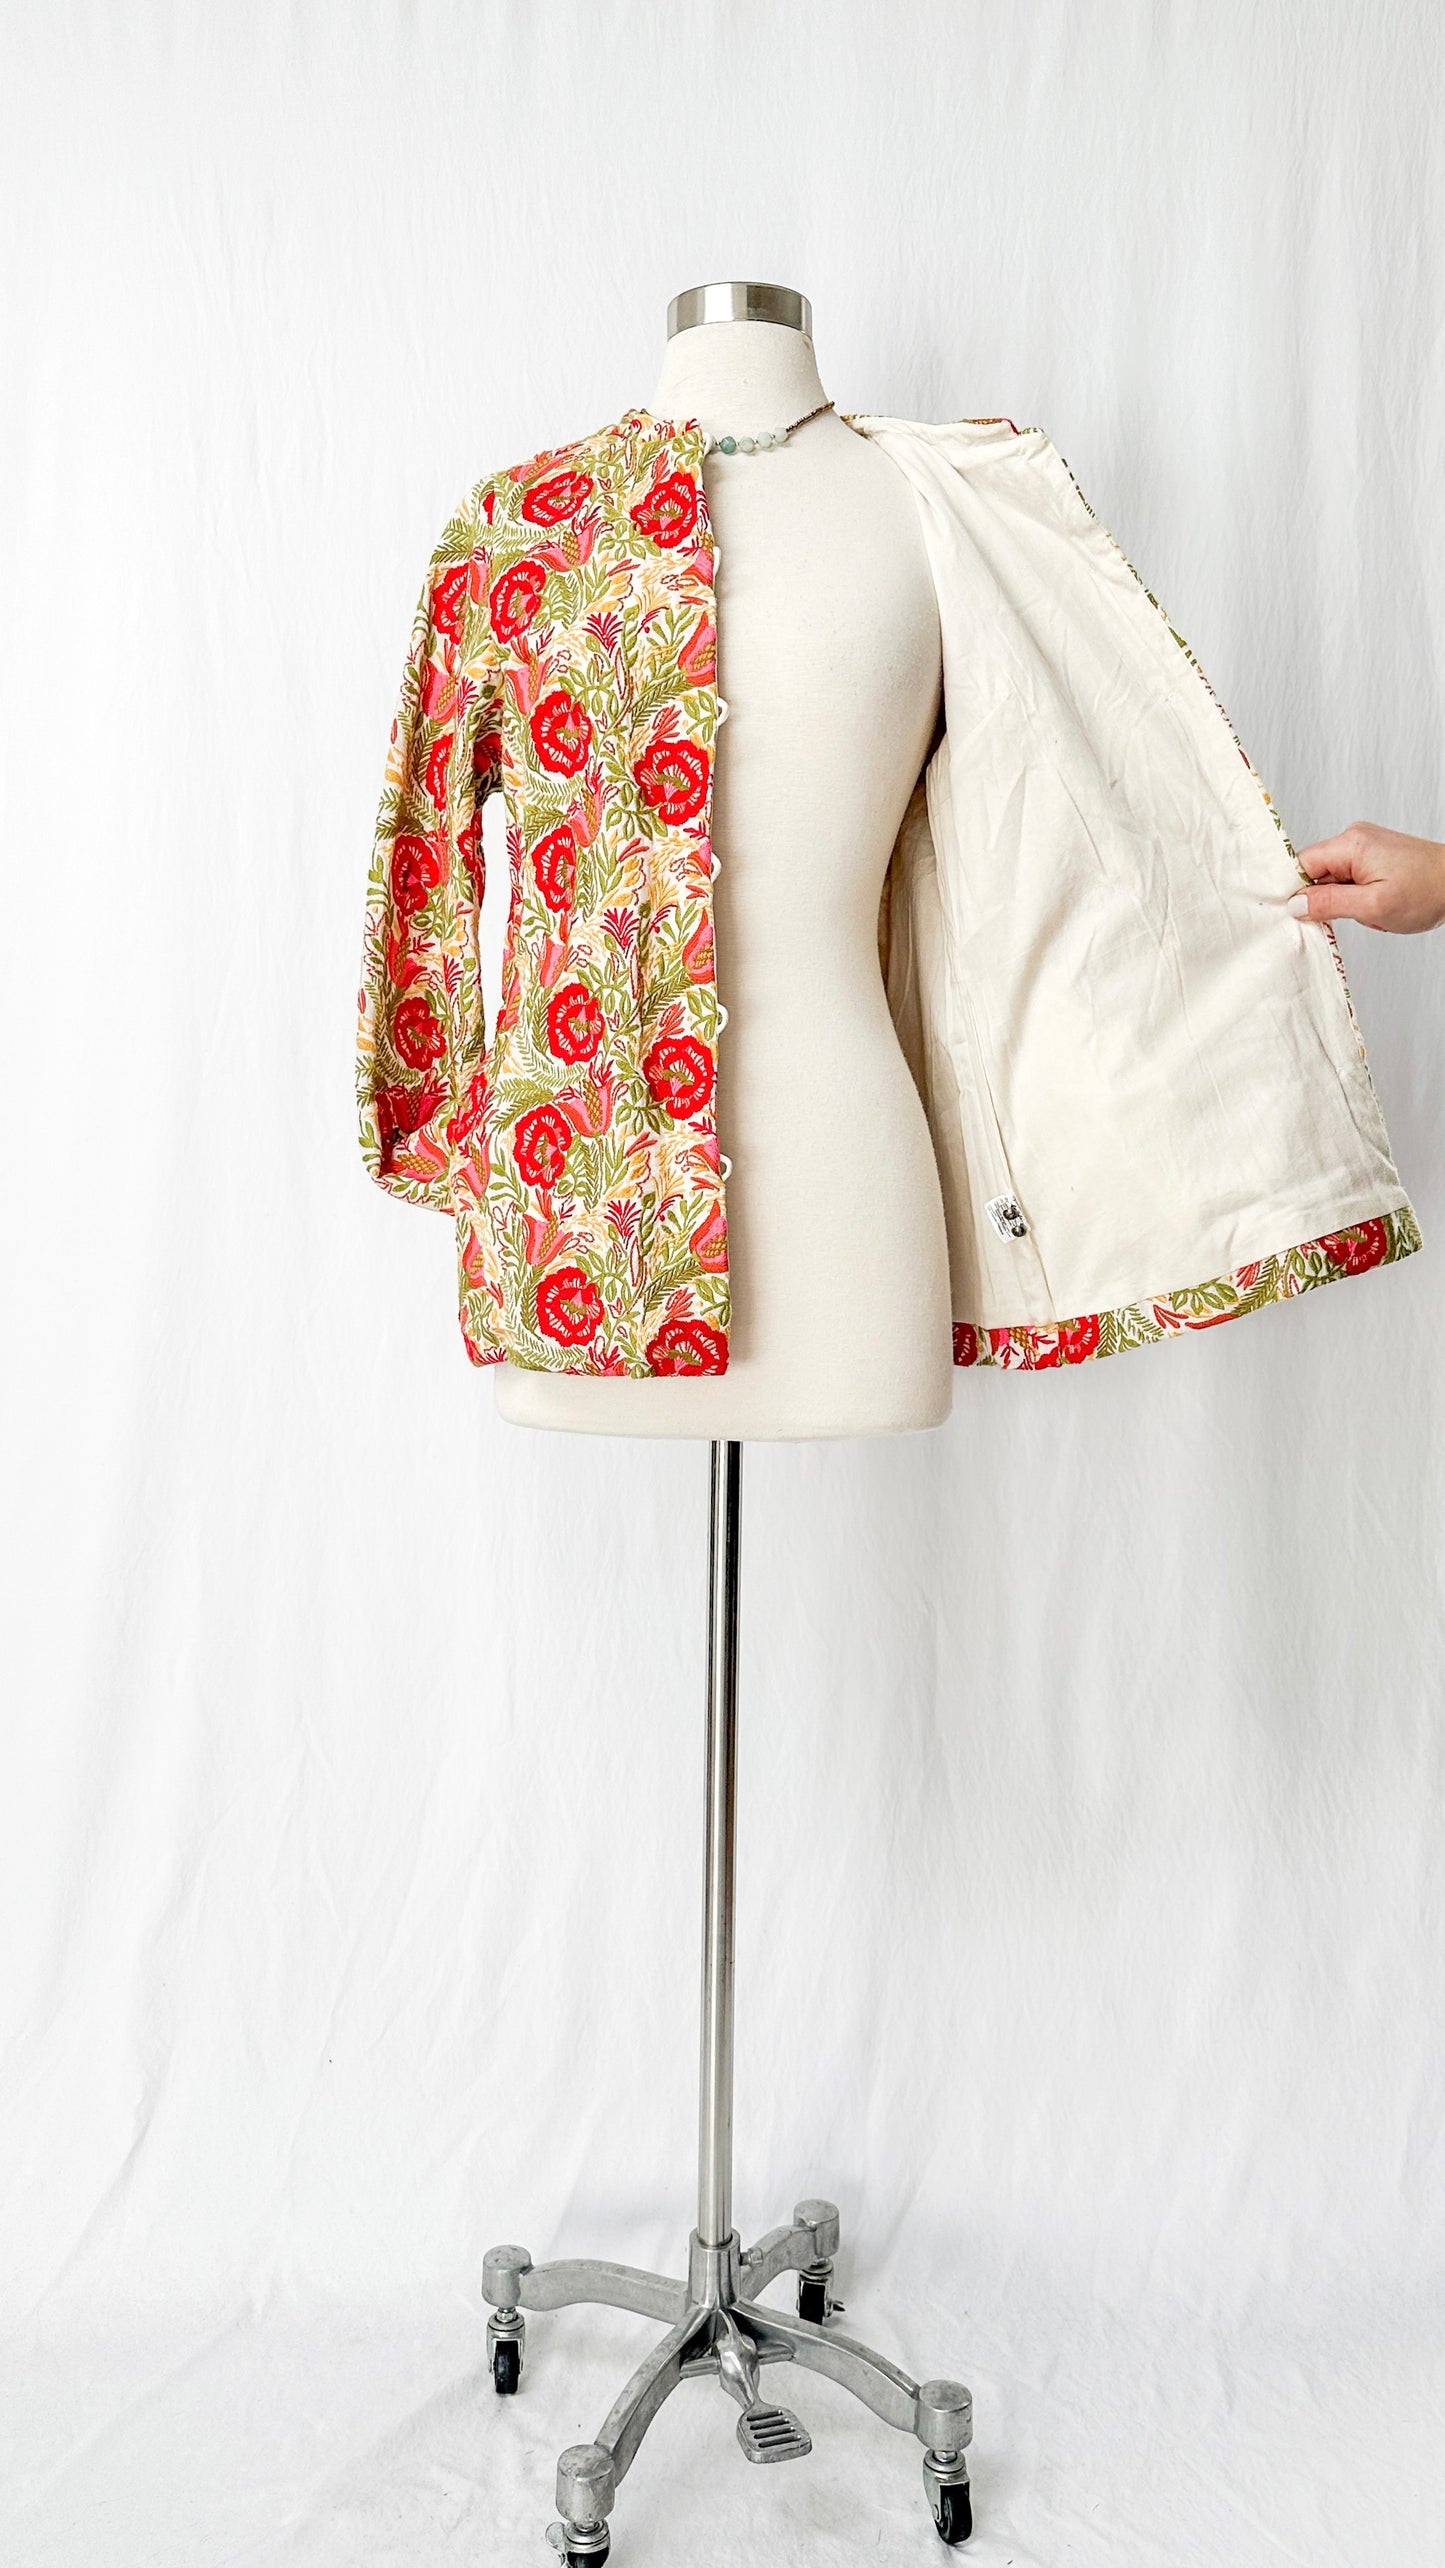 Gudrun Sjödén Spring Floral Embroidered Jacket (S/M)